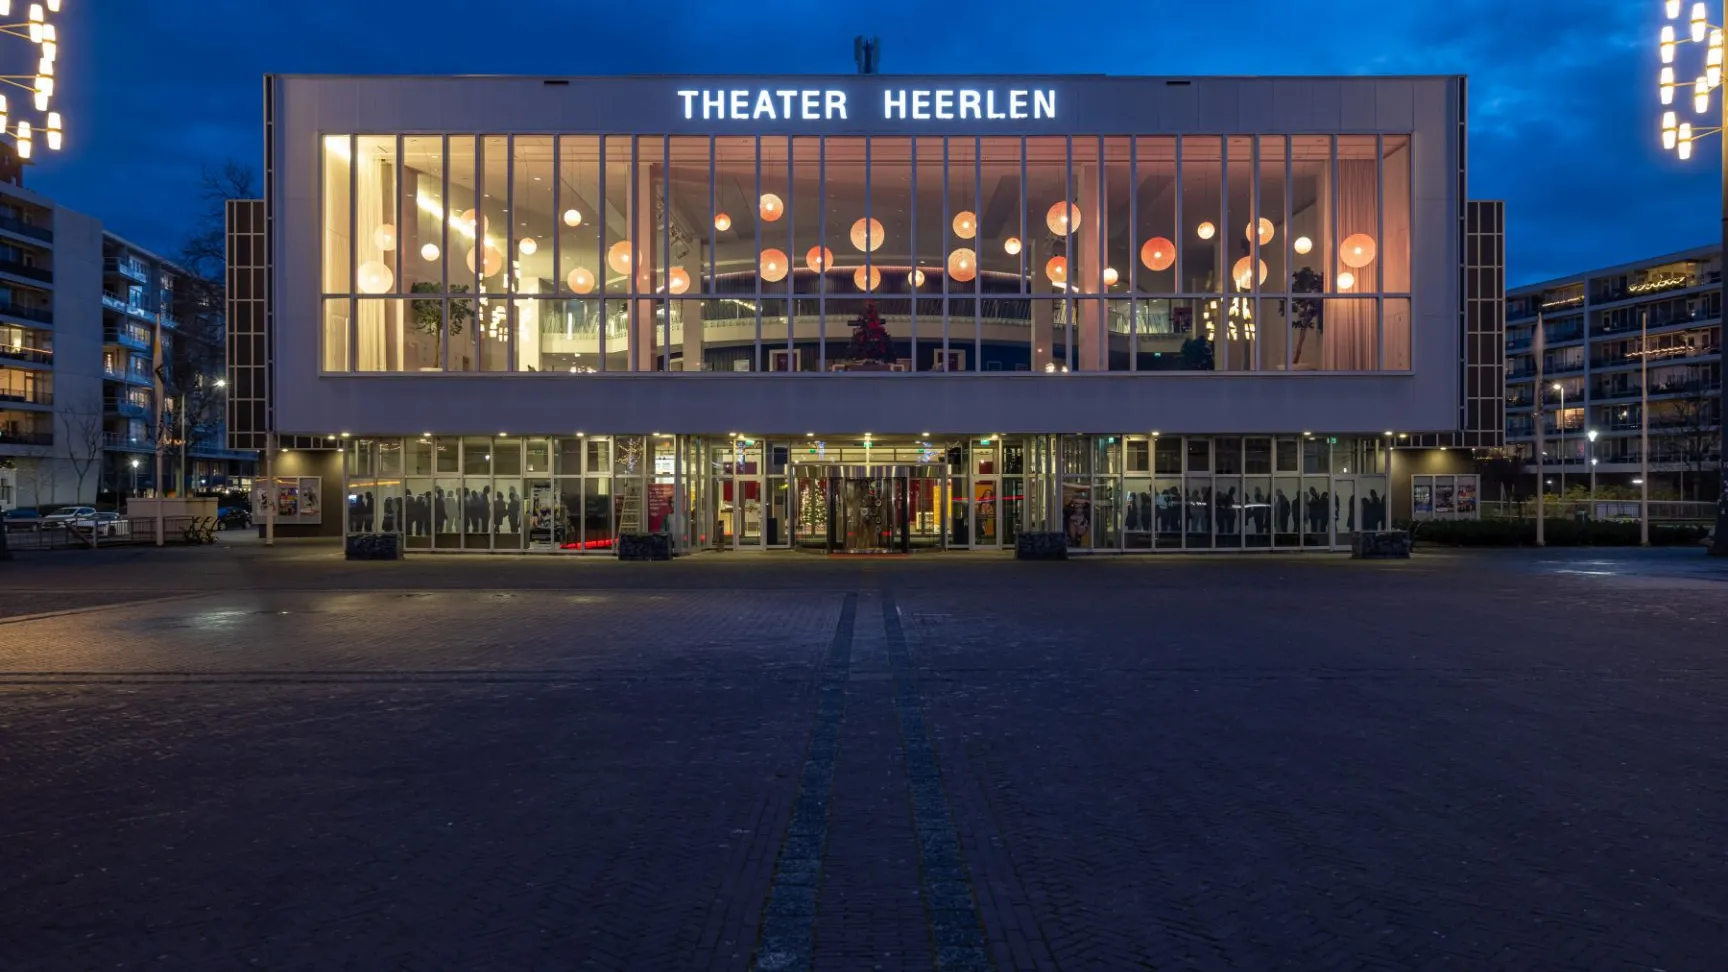 Theatre Heerlen